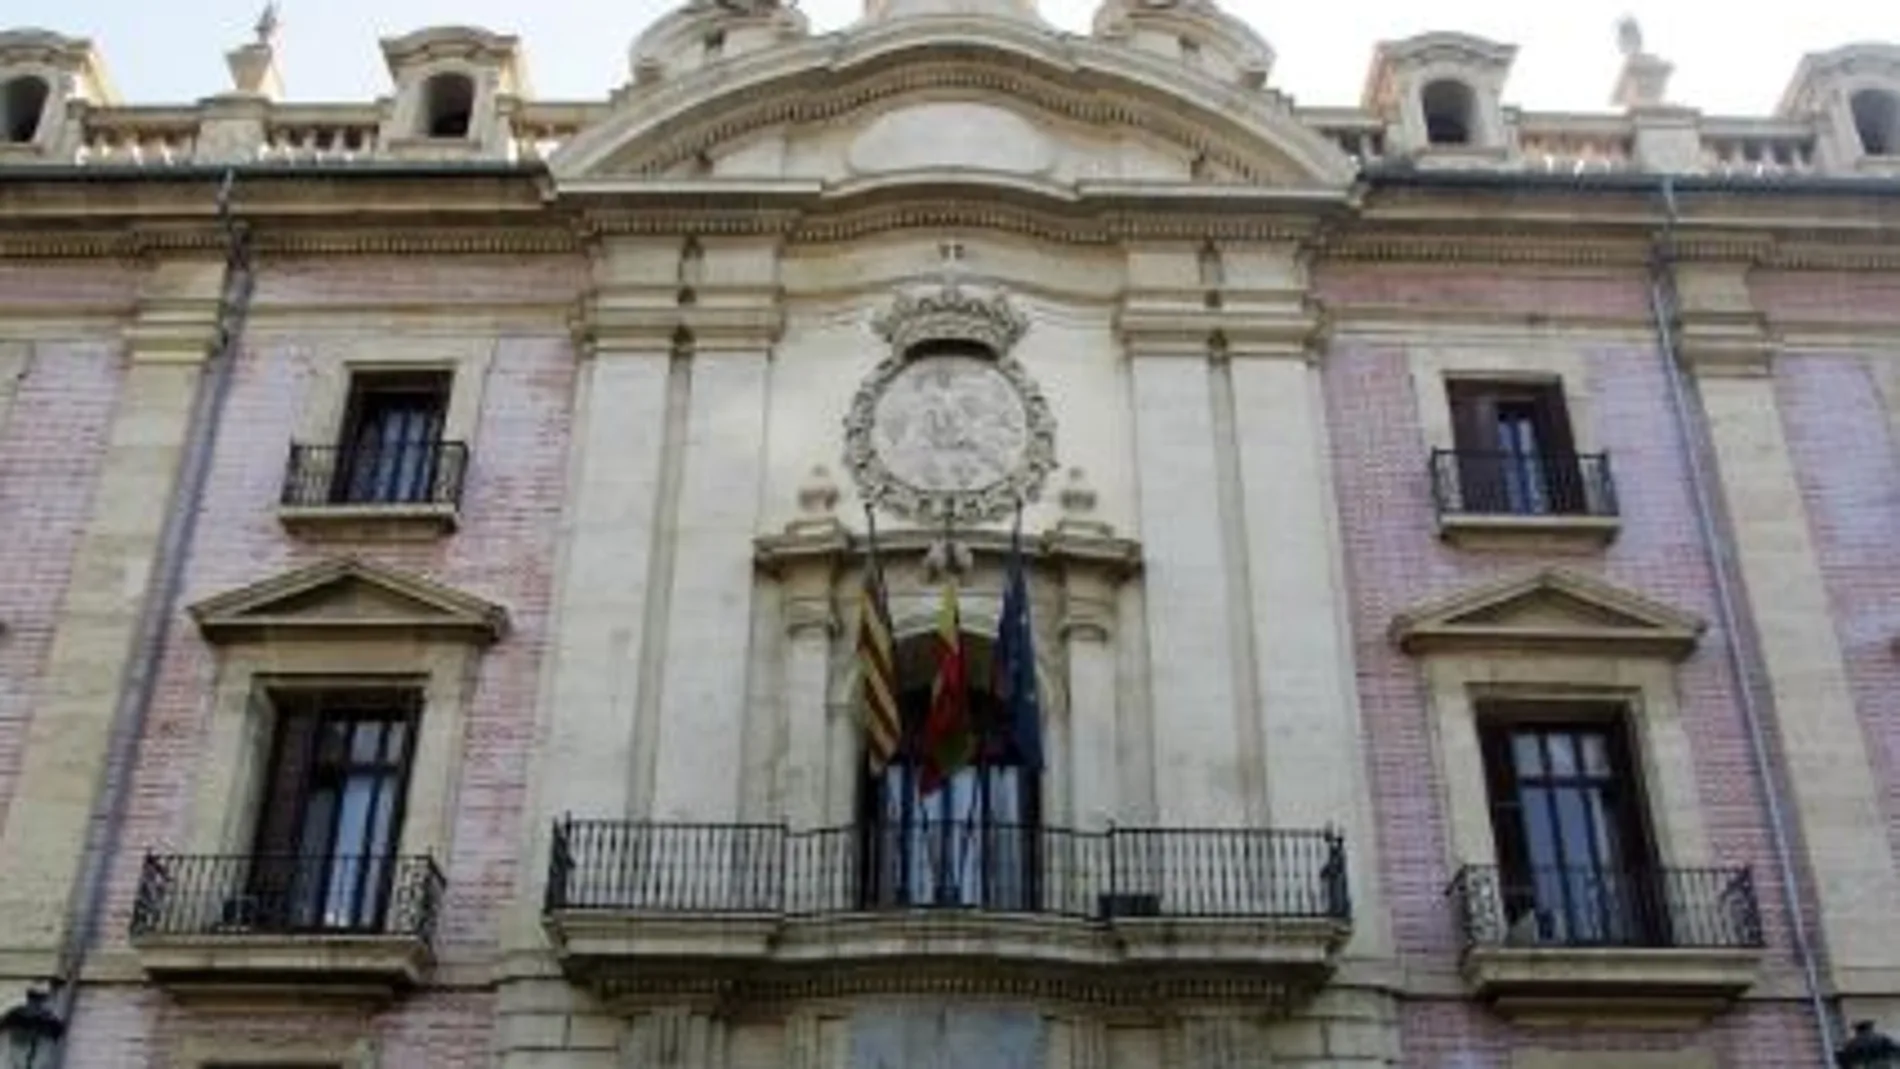 Tribunal Superior de Justicia de la Comunitat Valenciana (TSJCV)